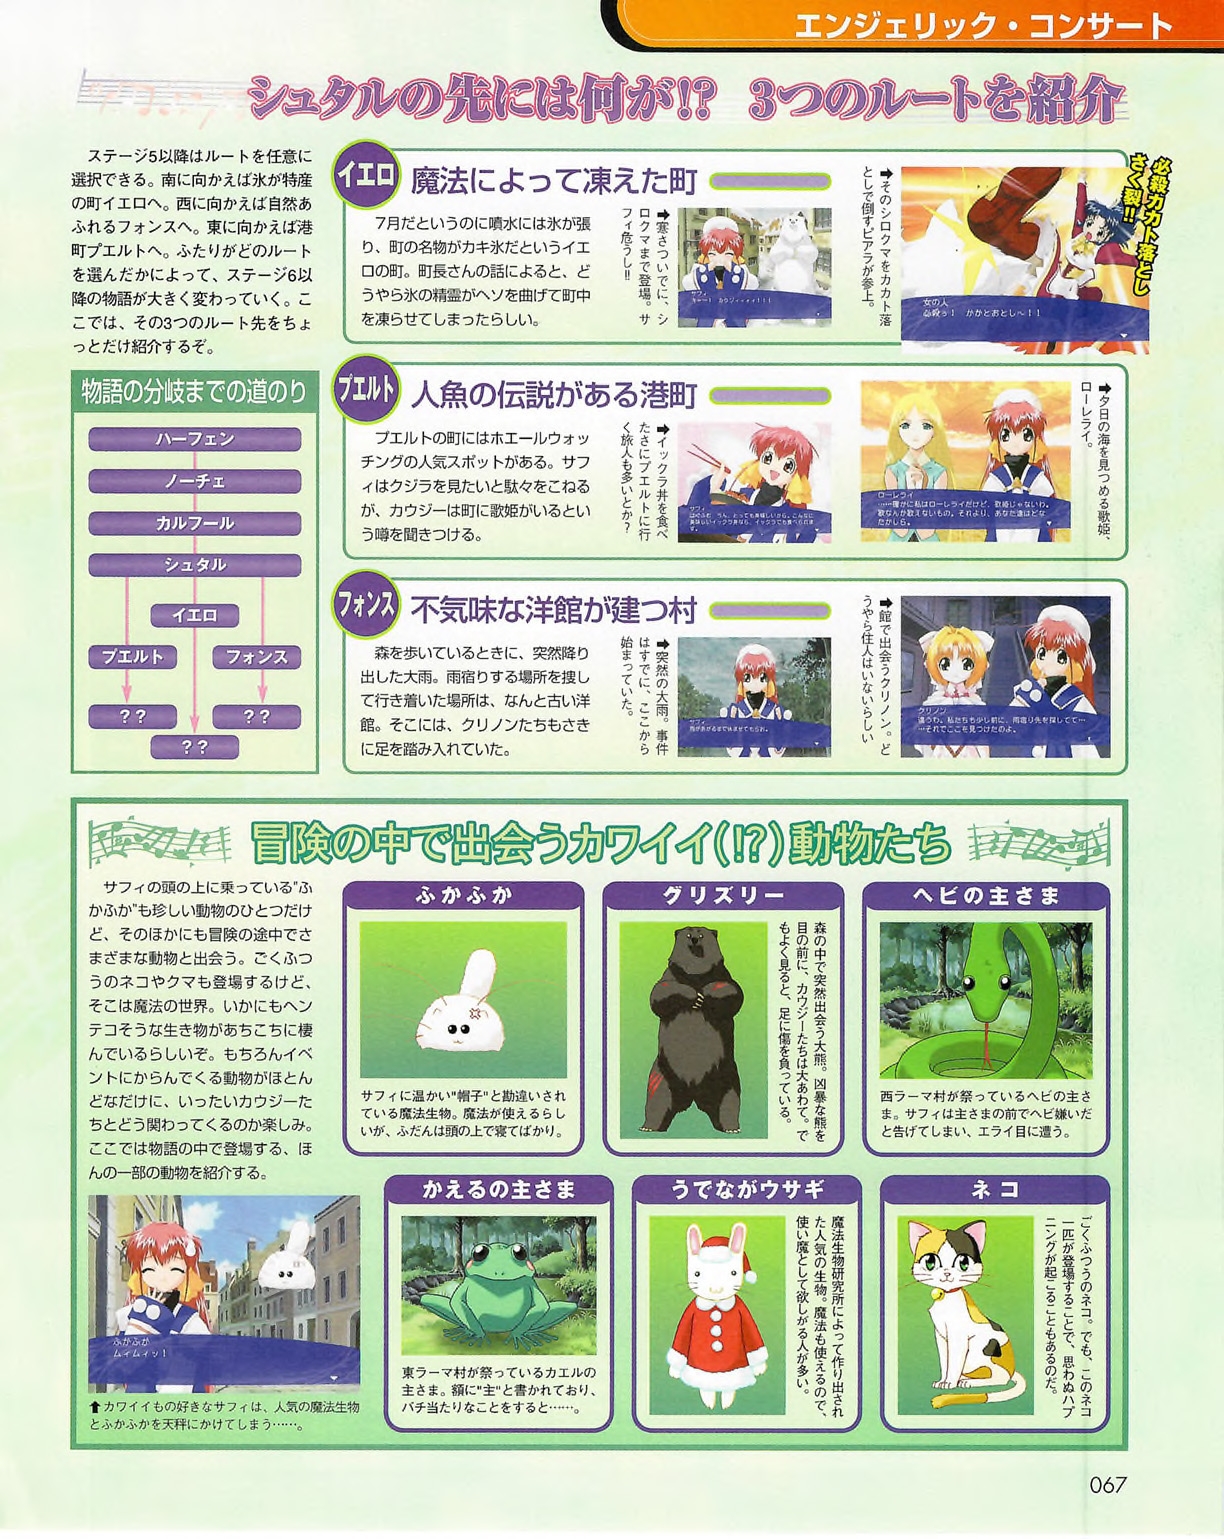 Famitsu_Xbox_2003-04_jp2 66